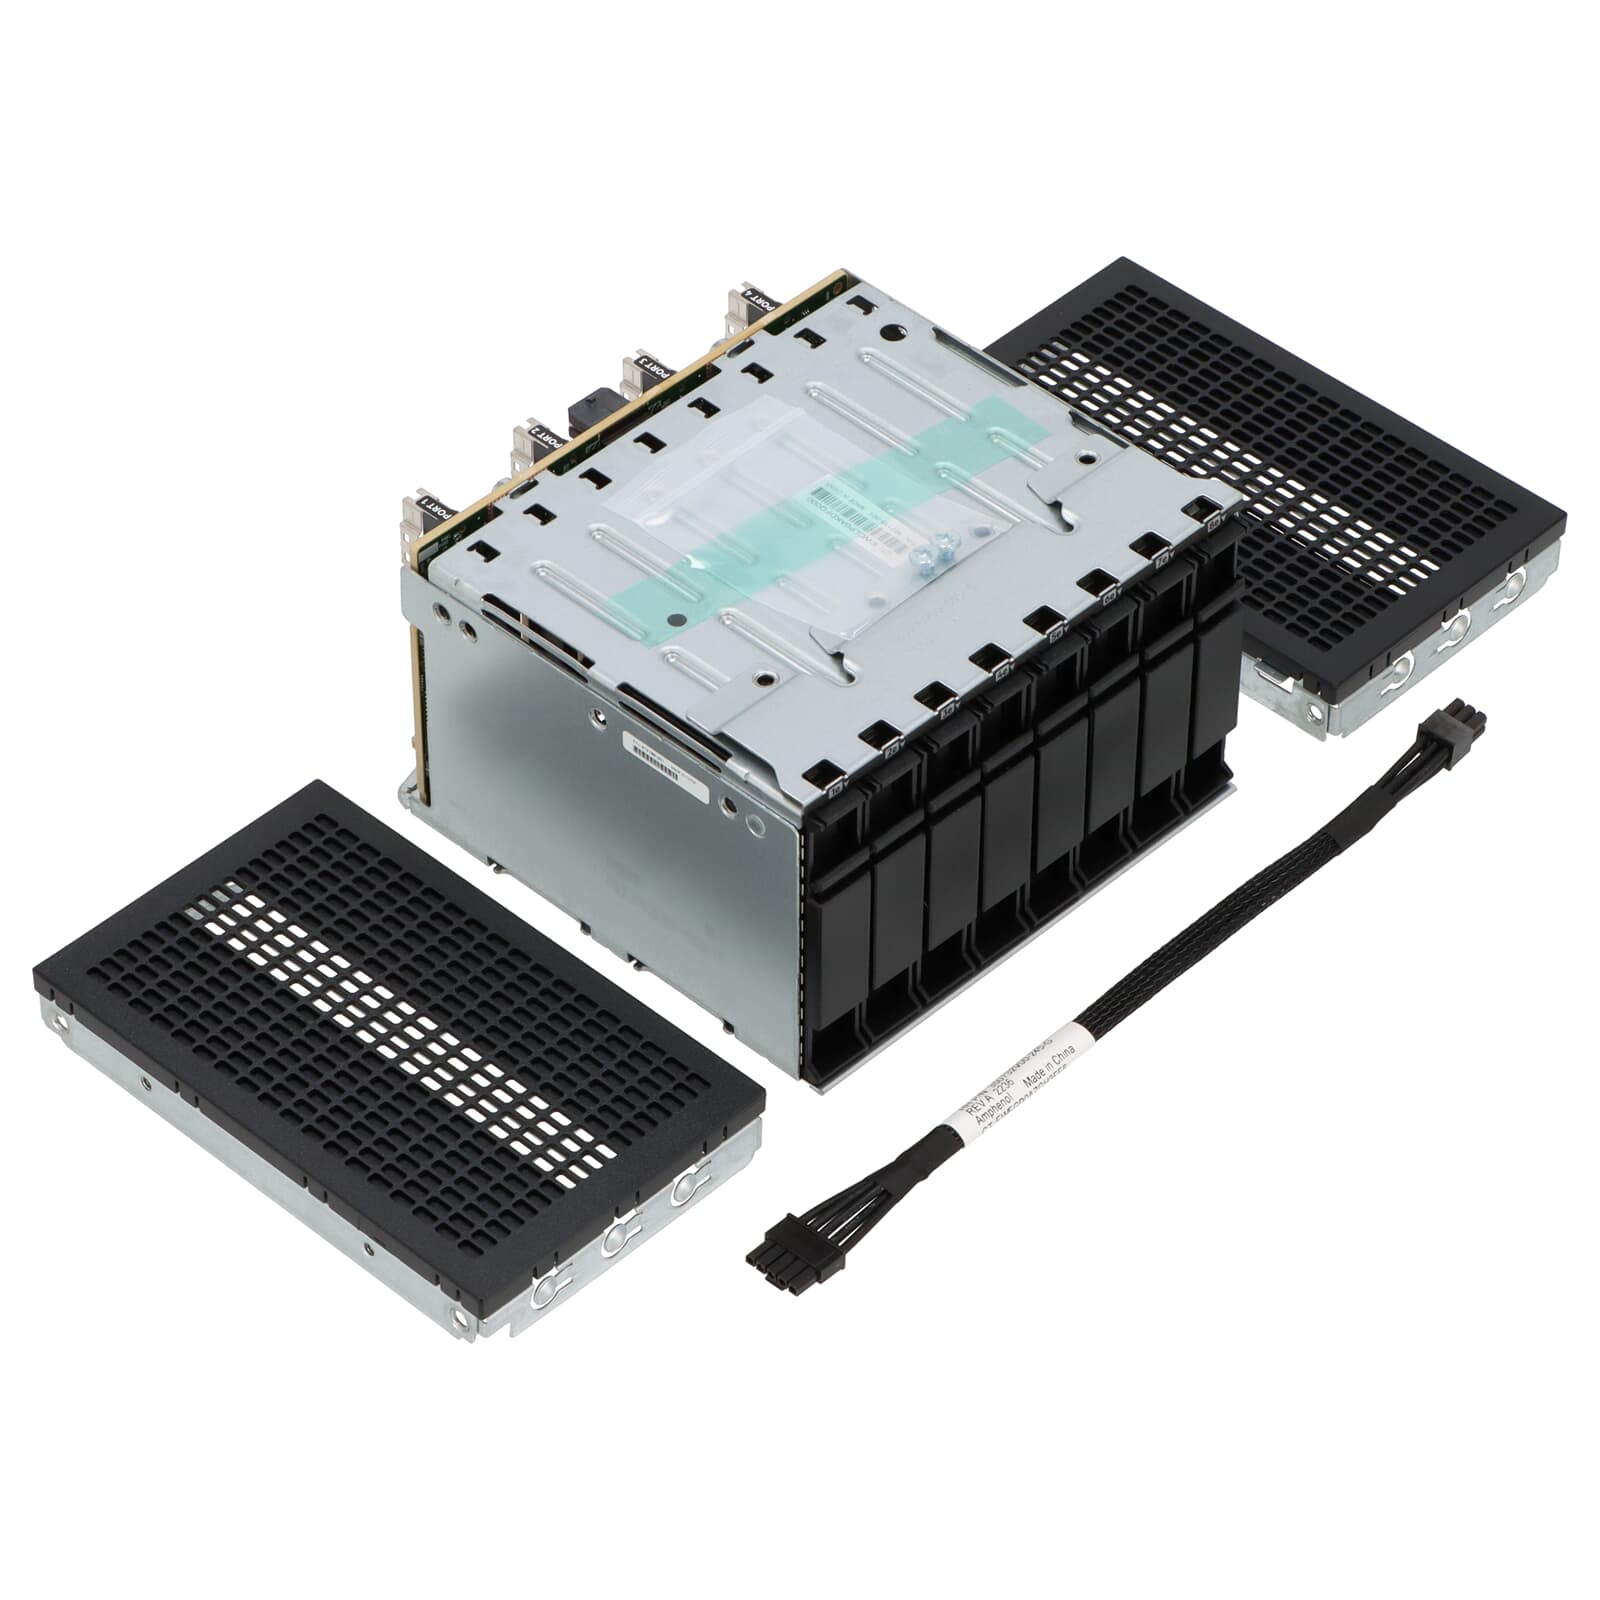 HPE DL38x NVMe 8 SSD Express Bay Enablement kit 826689-B21 NEU